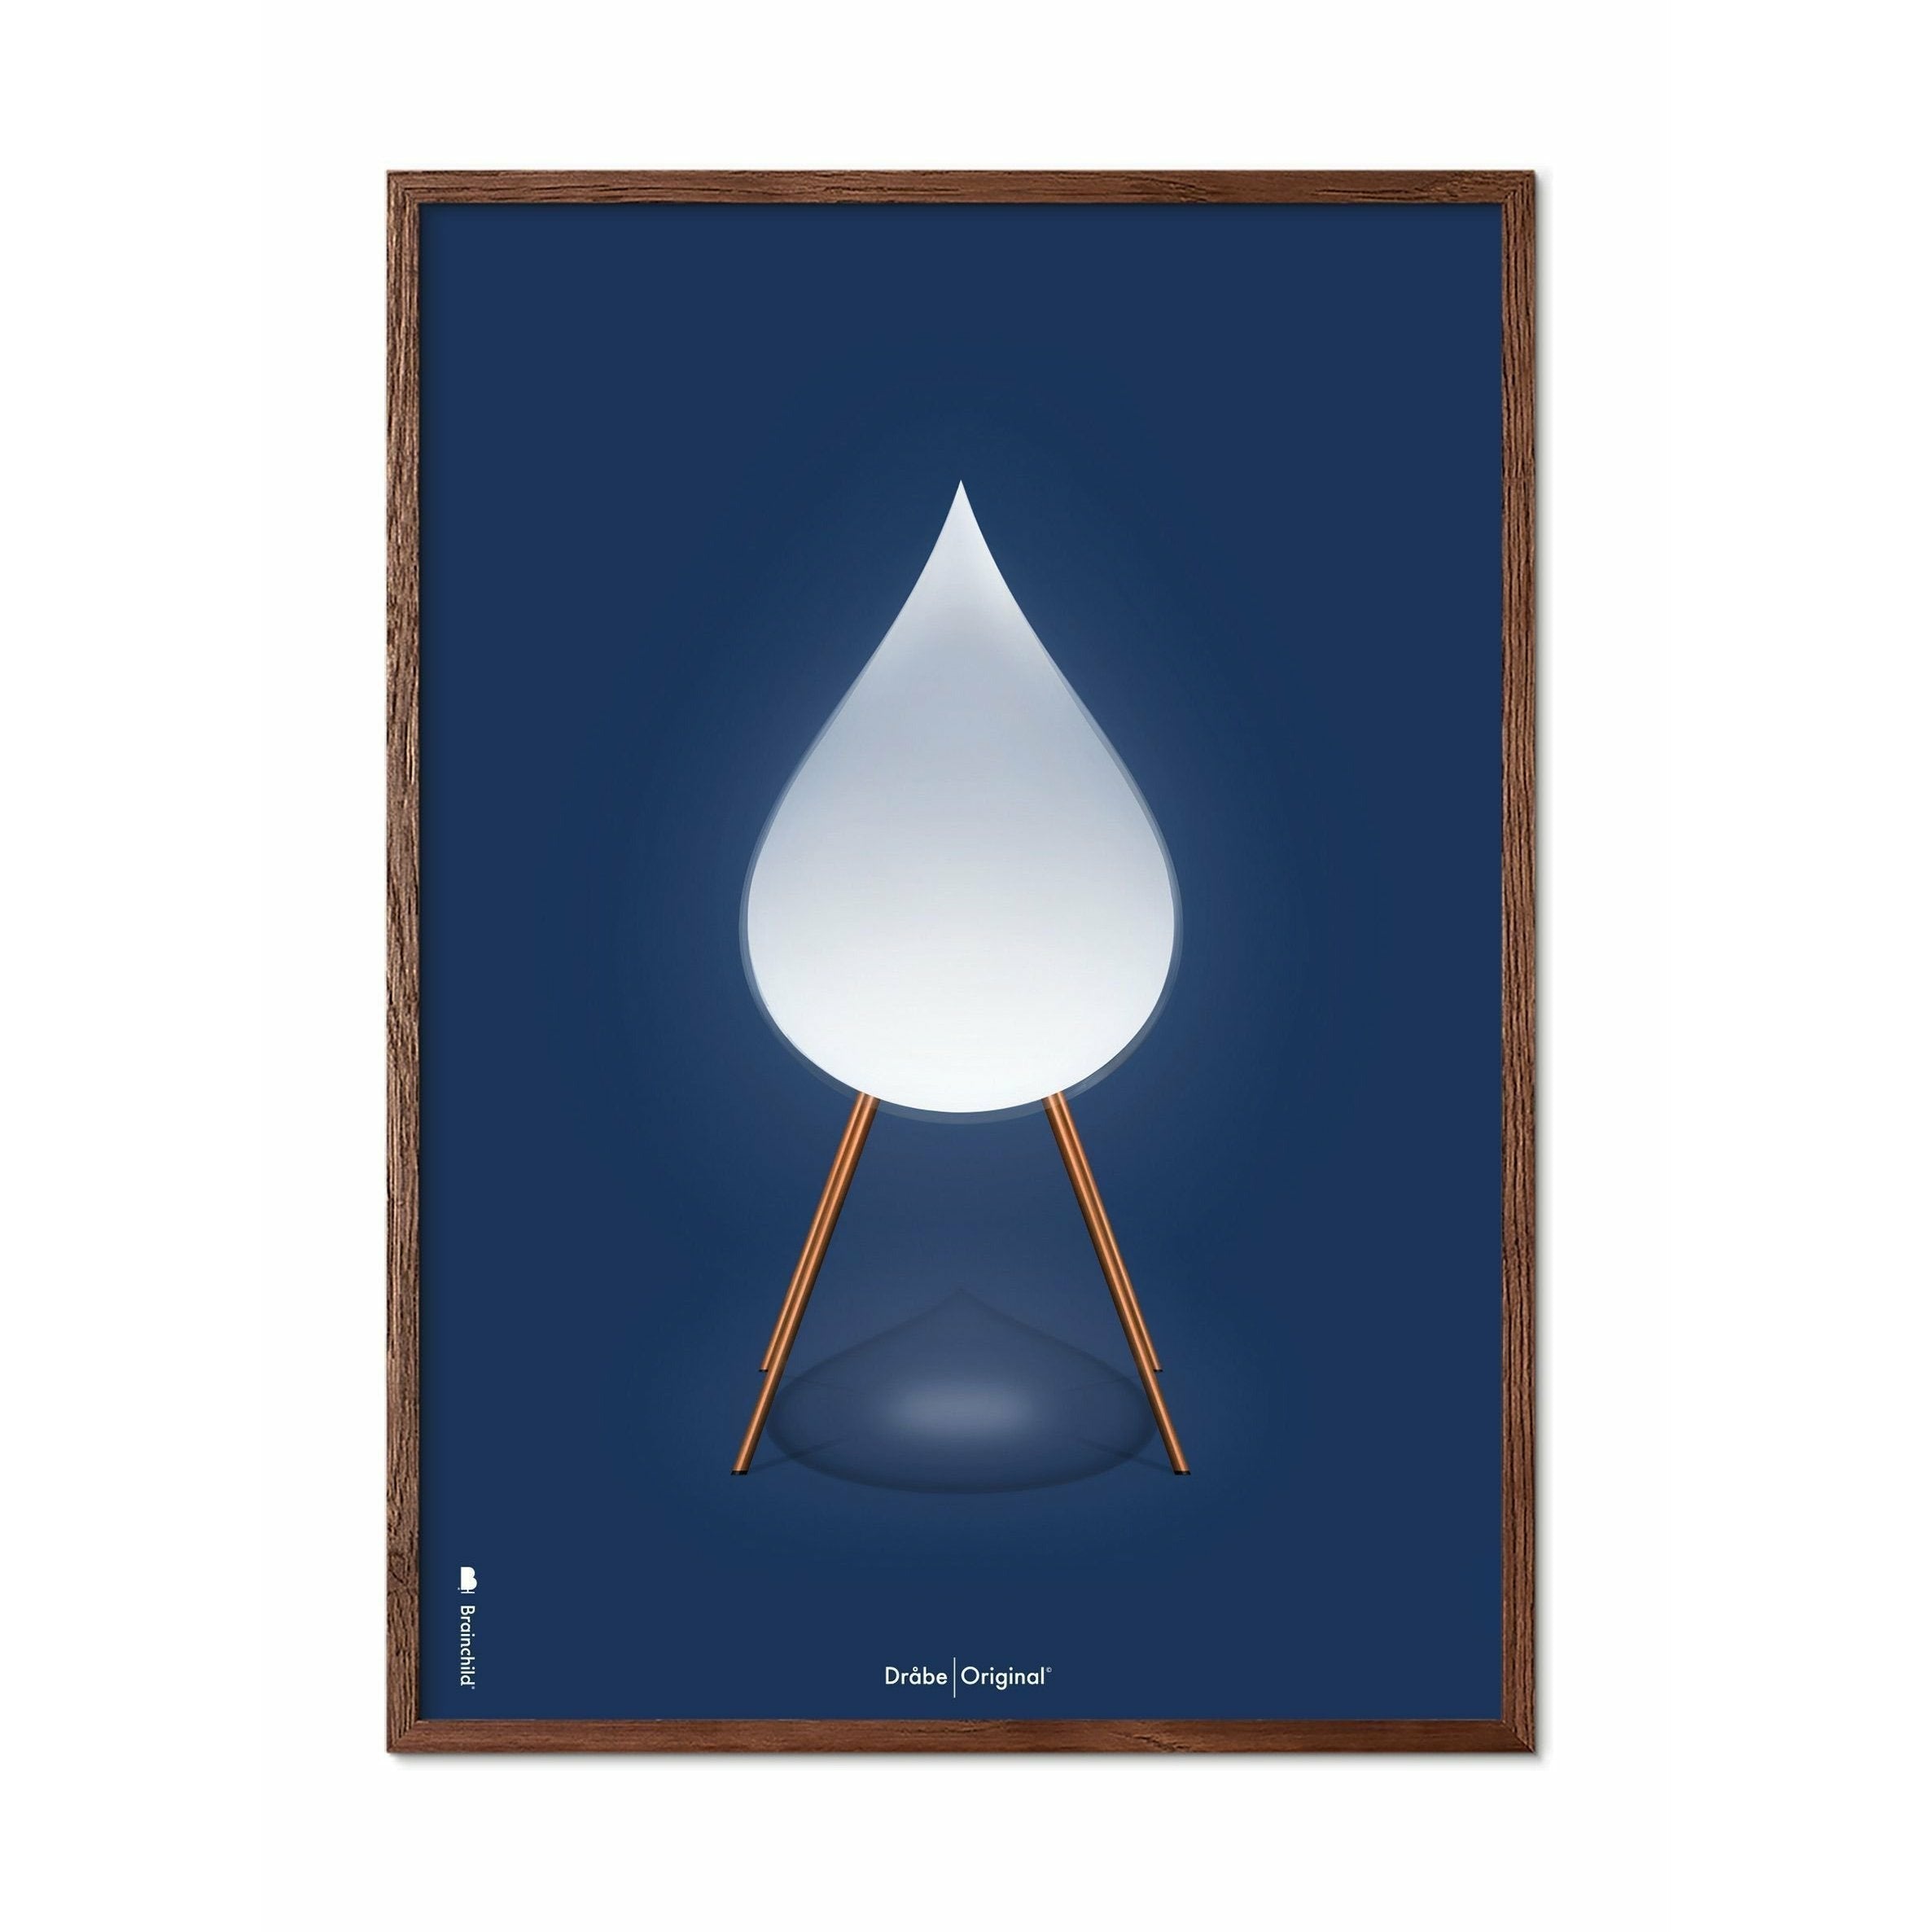 创意滴剂经典海报，由深木50x70厘米制成的框架，深蓝色背景